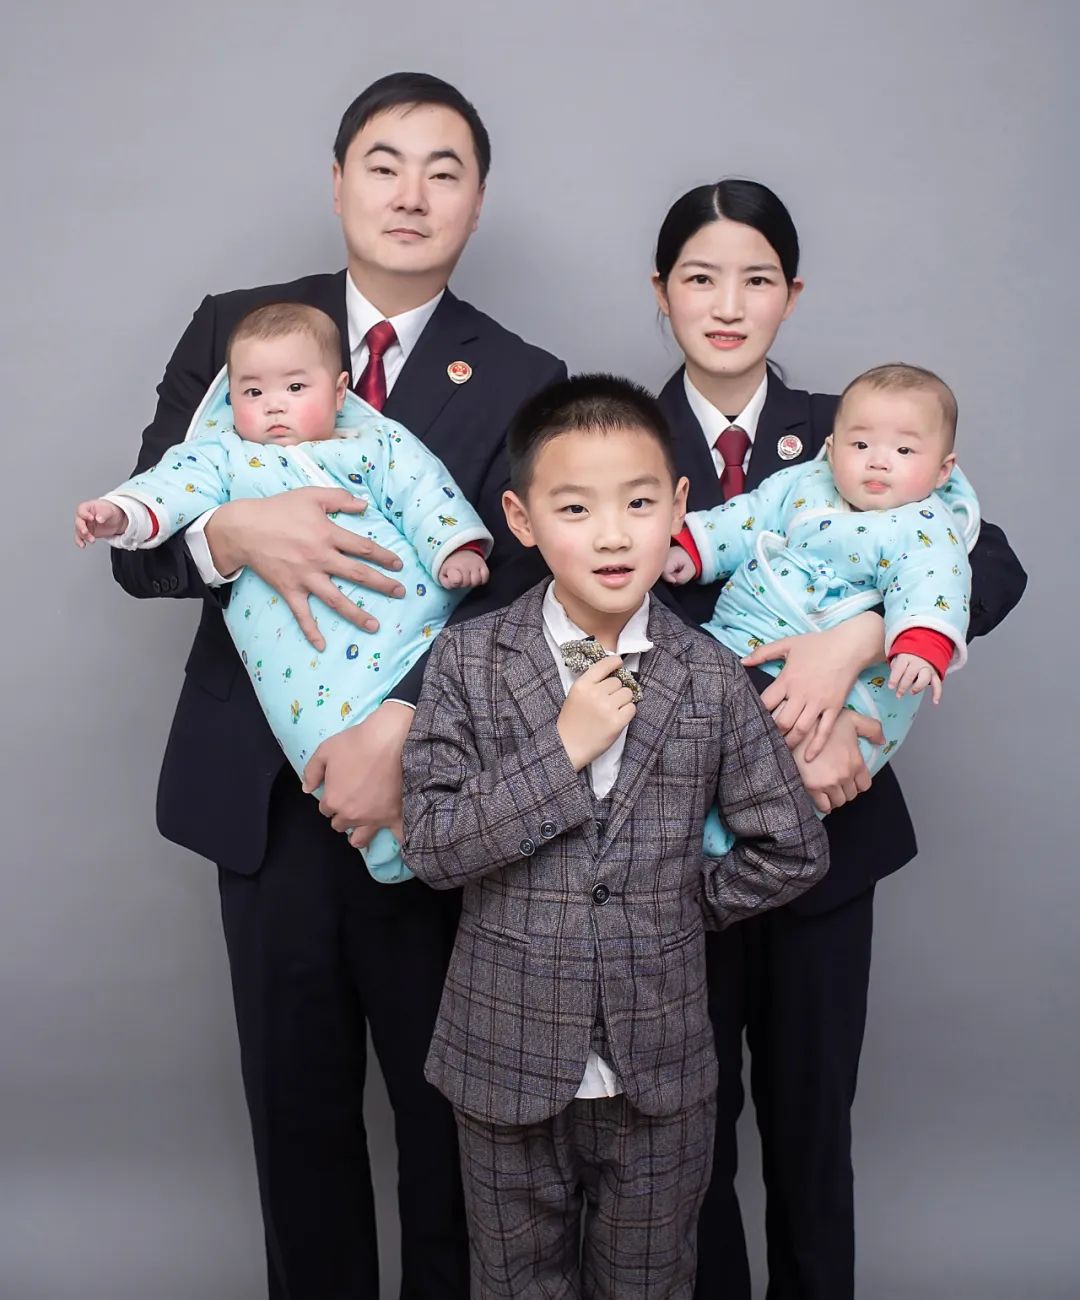 荣誉丨这个家庭荣获2022年楚雄州“最美家庭”